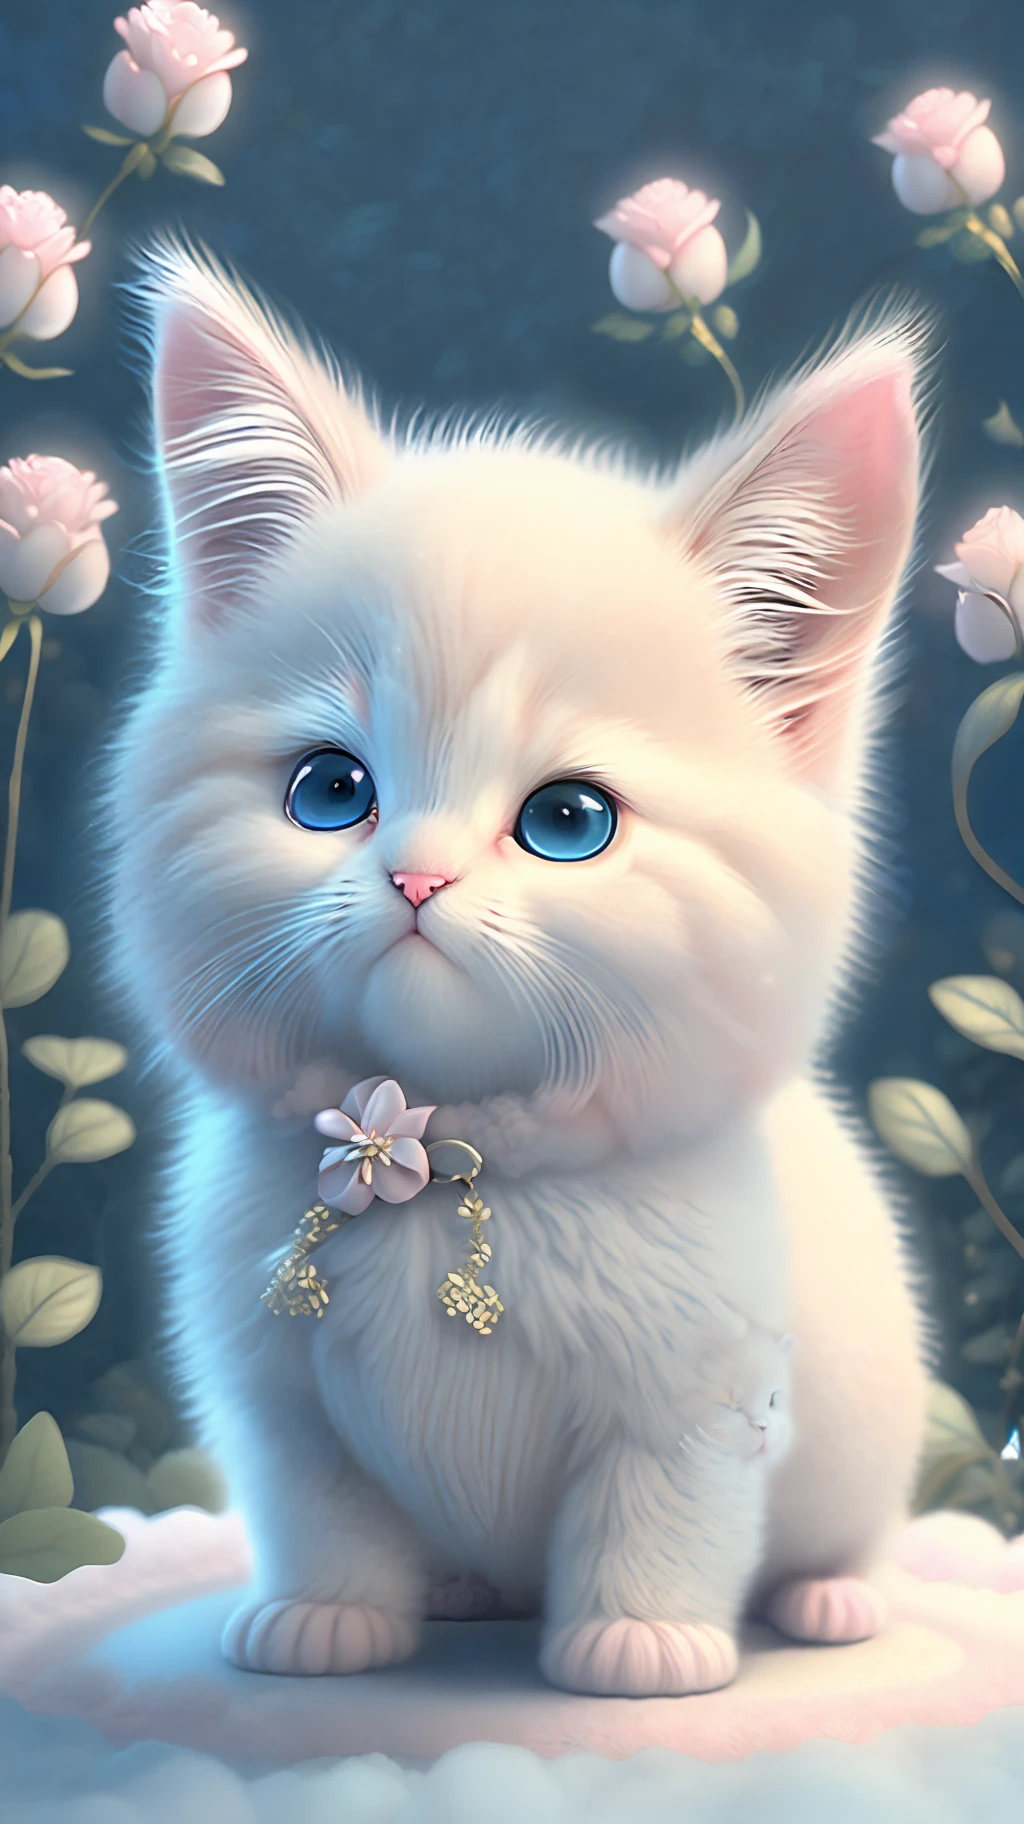 En este arte CG ultradetallado, Lindos gatitos rodeados de rosas etéreas., risa, mejor calidad, alta resolución, detalles intrincados, Fantasía, Animales bonitos, izquierda, divertido, izquierda!! boca!!! reír!!!